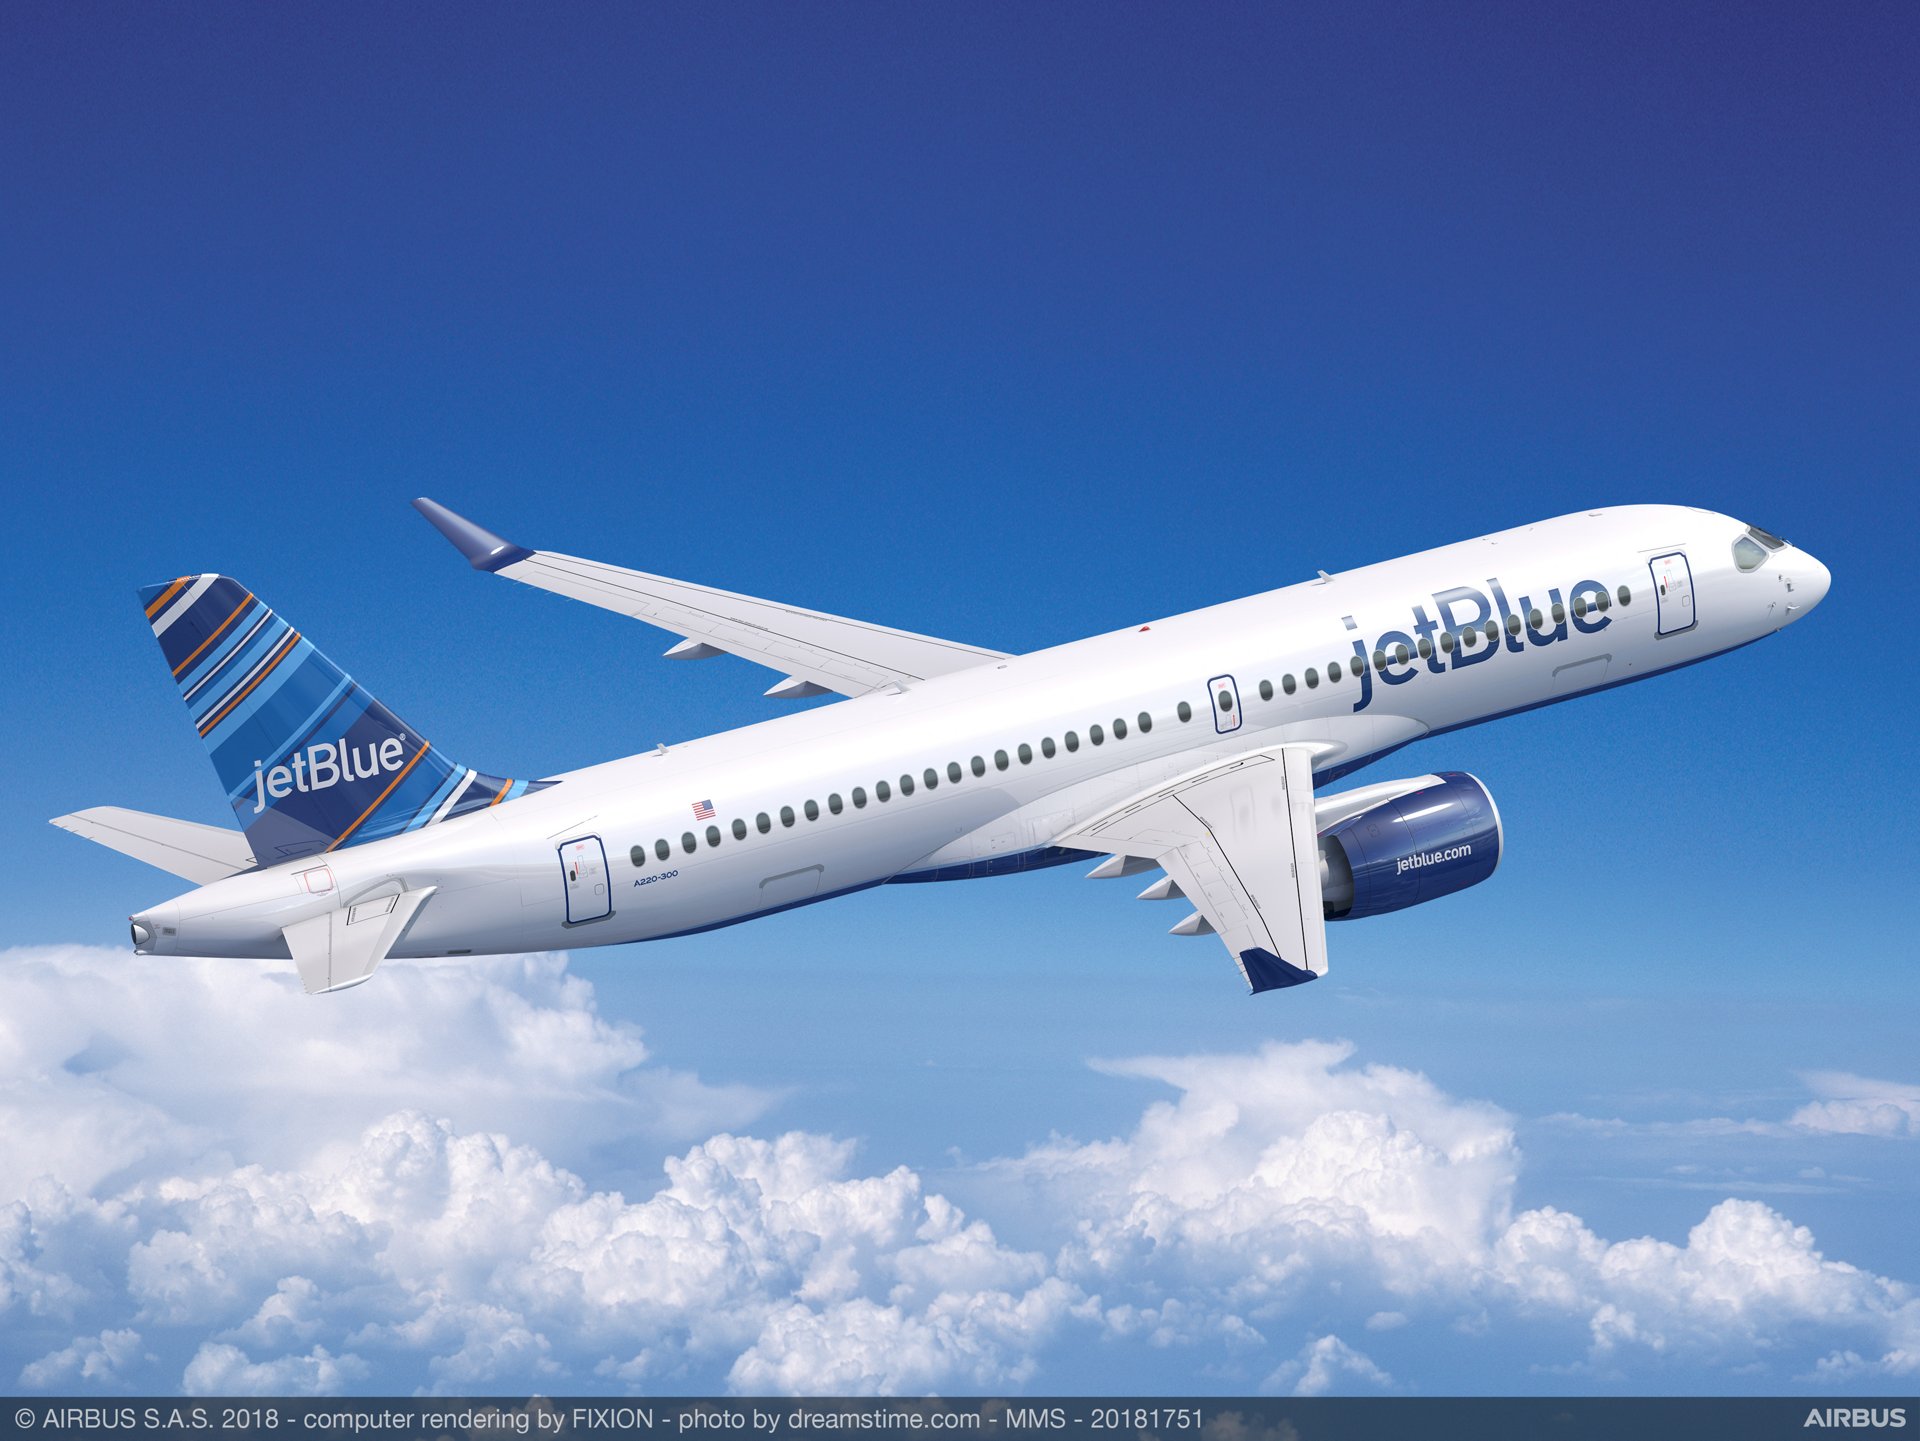 Desserte aérienne : Les New-yorkais de retour en Guadeloupe avec le 1er vol de JetBlue